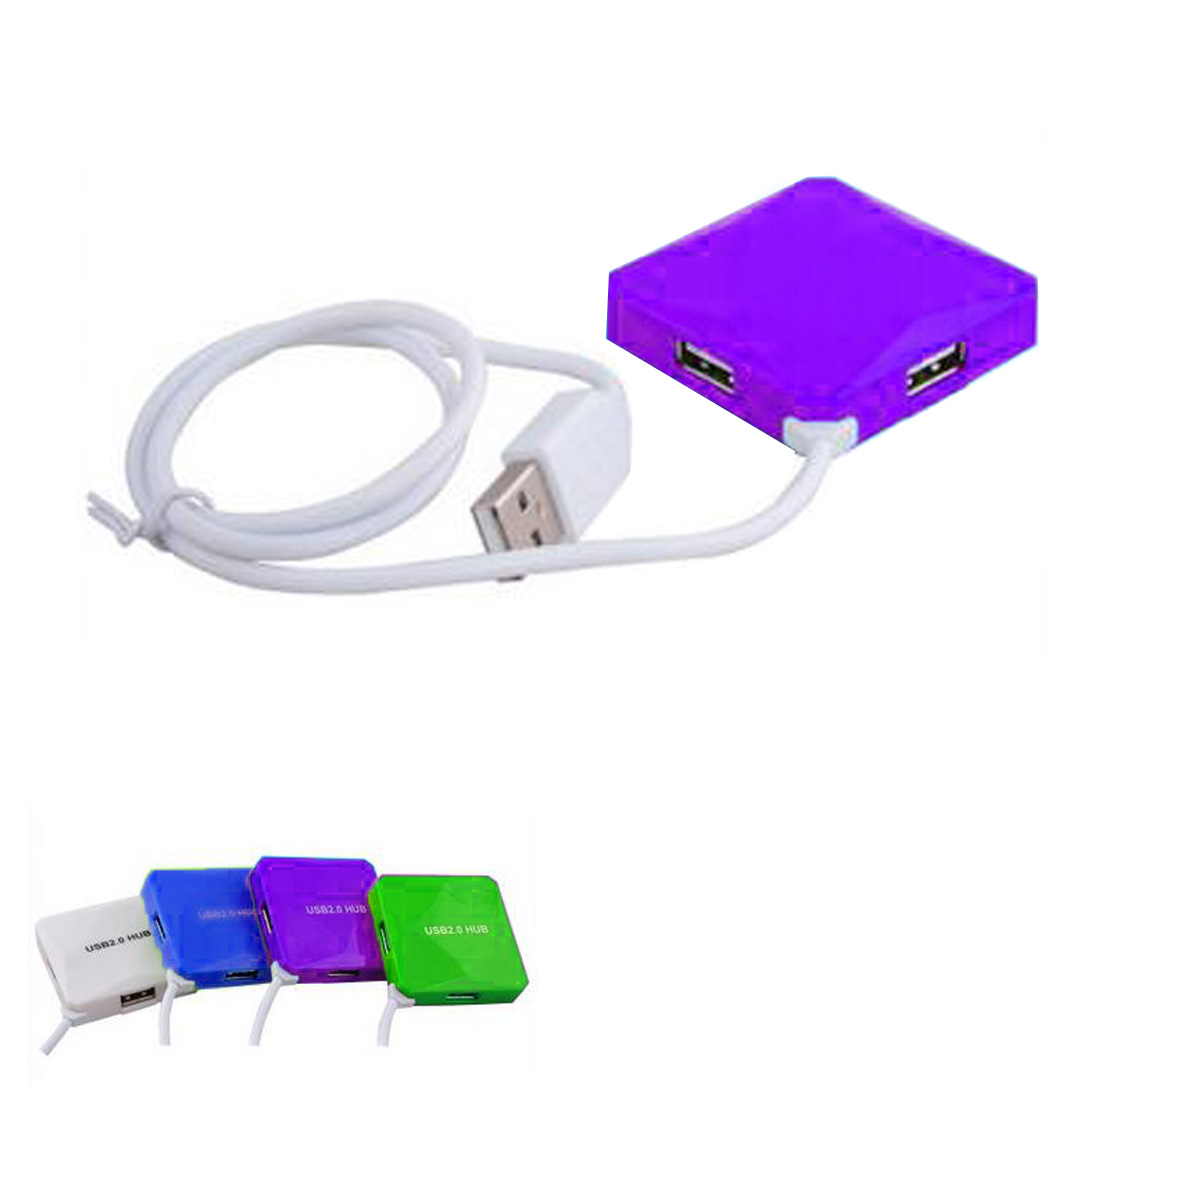 GL-AAA1144 High Speed 4-Port USB Hub